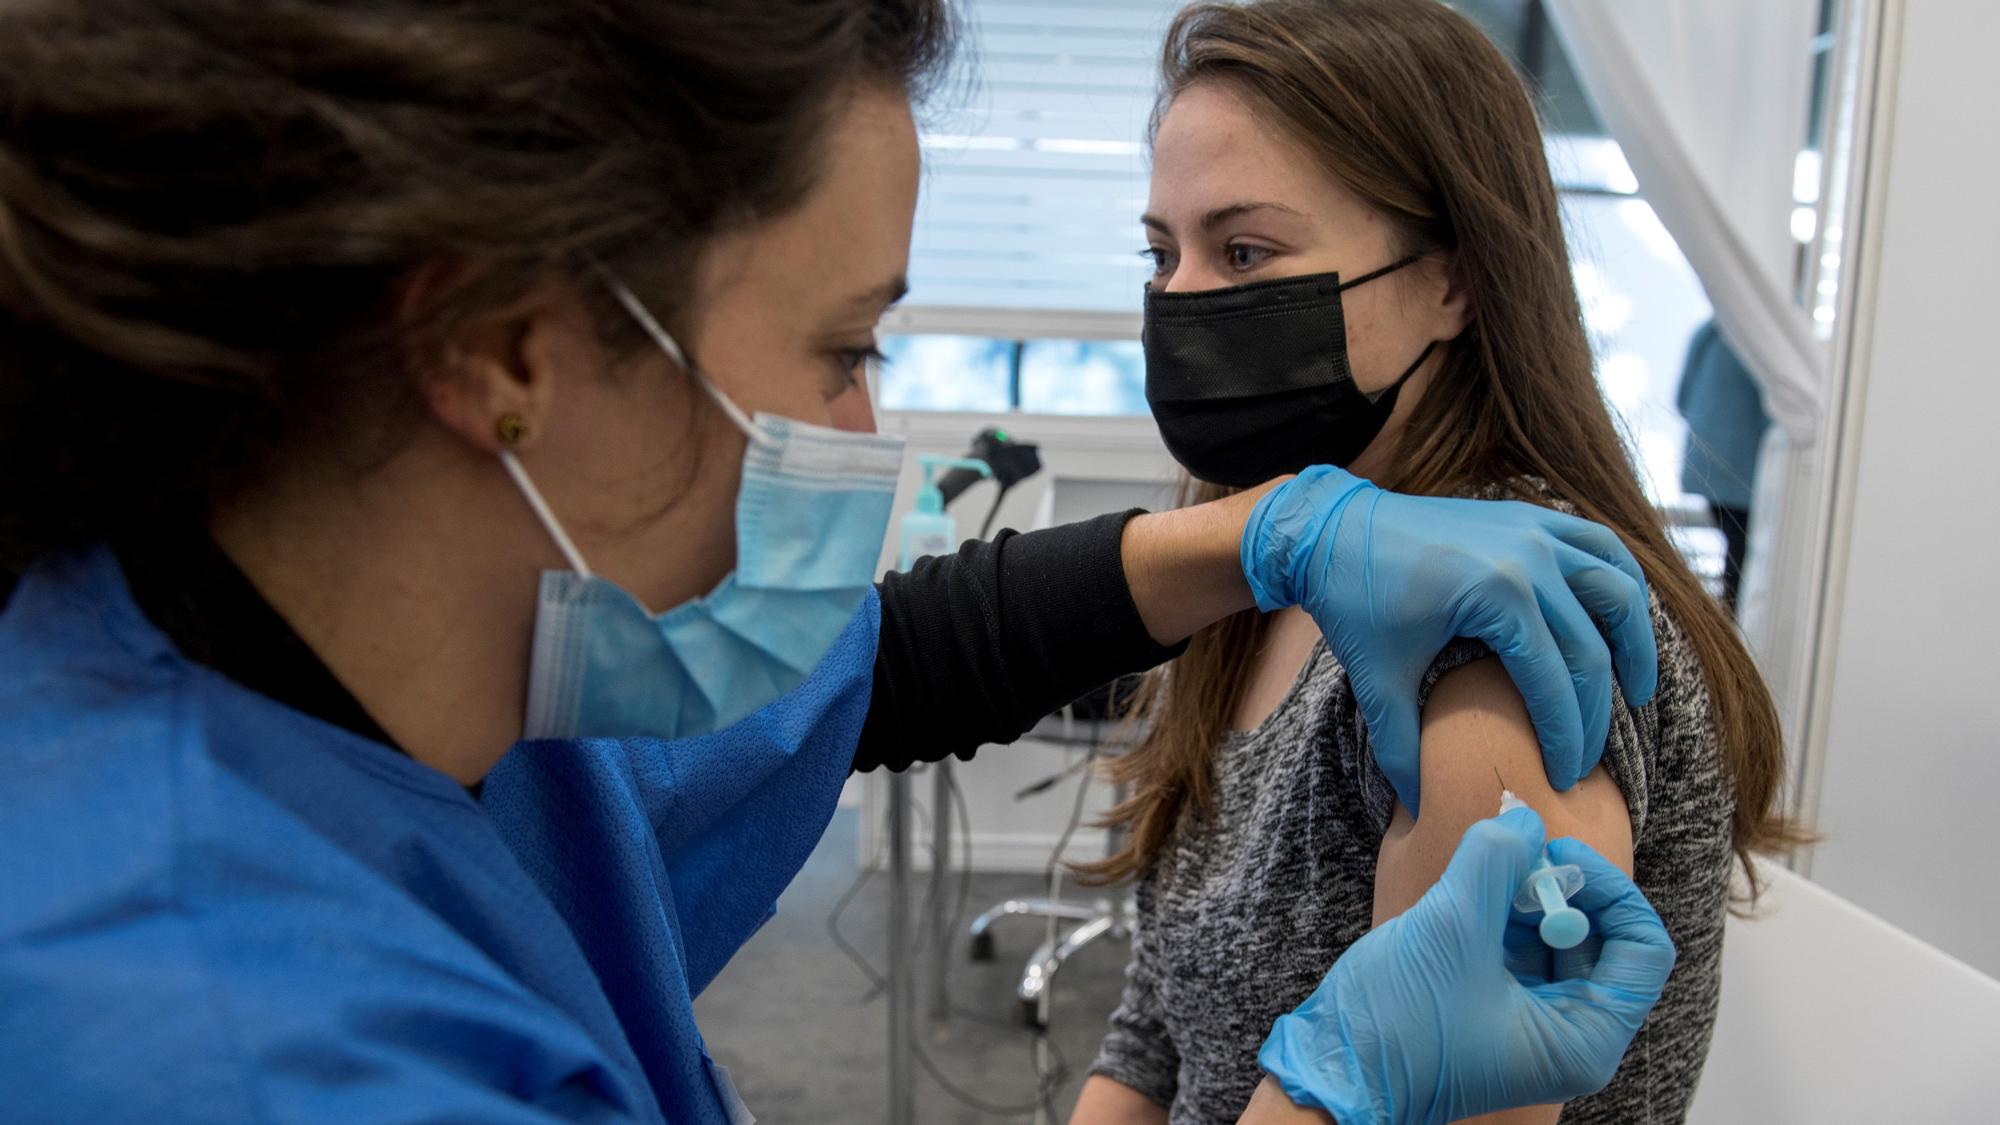 Barcelona 29.11.2021. Sociedad. Una joven se vacuna contra la Covid 19 en el recinto de la Fira. Fotografía de Jordi Cotrina